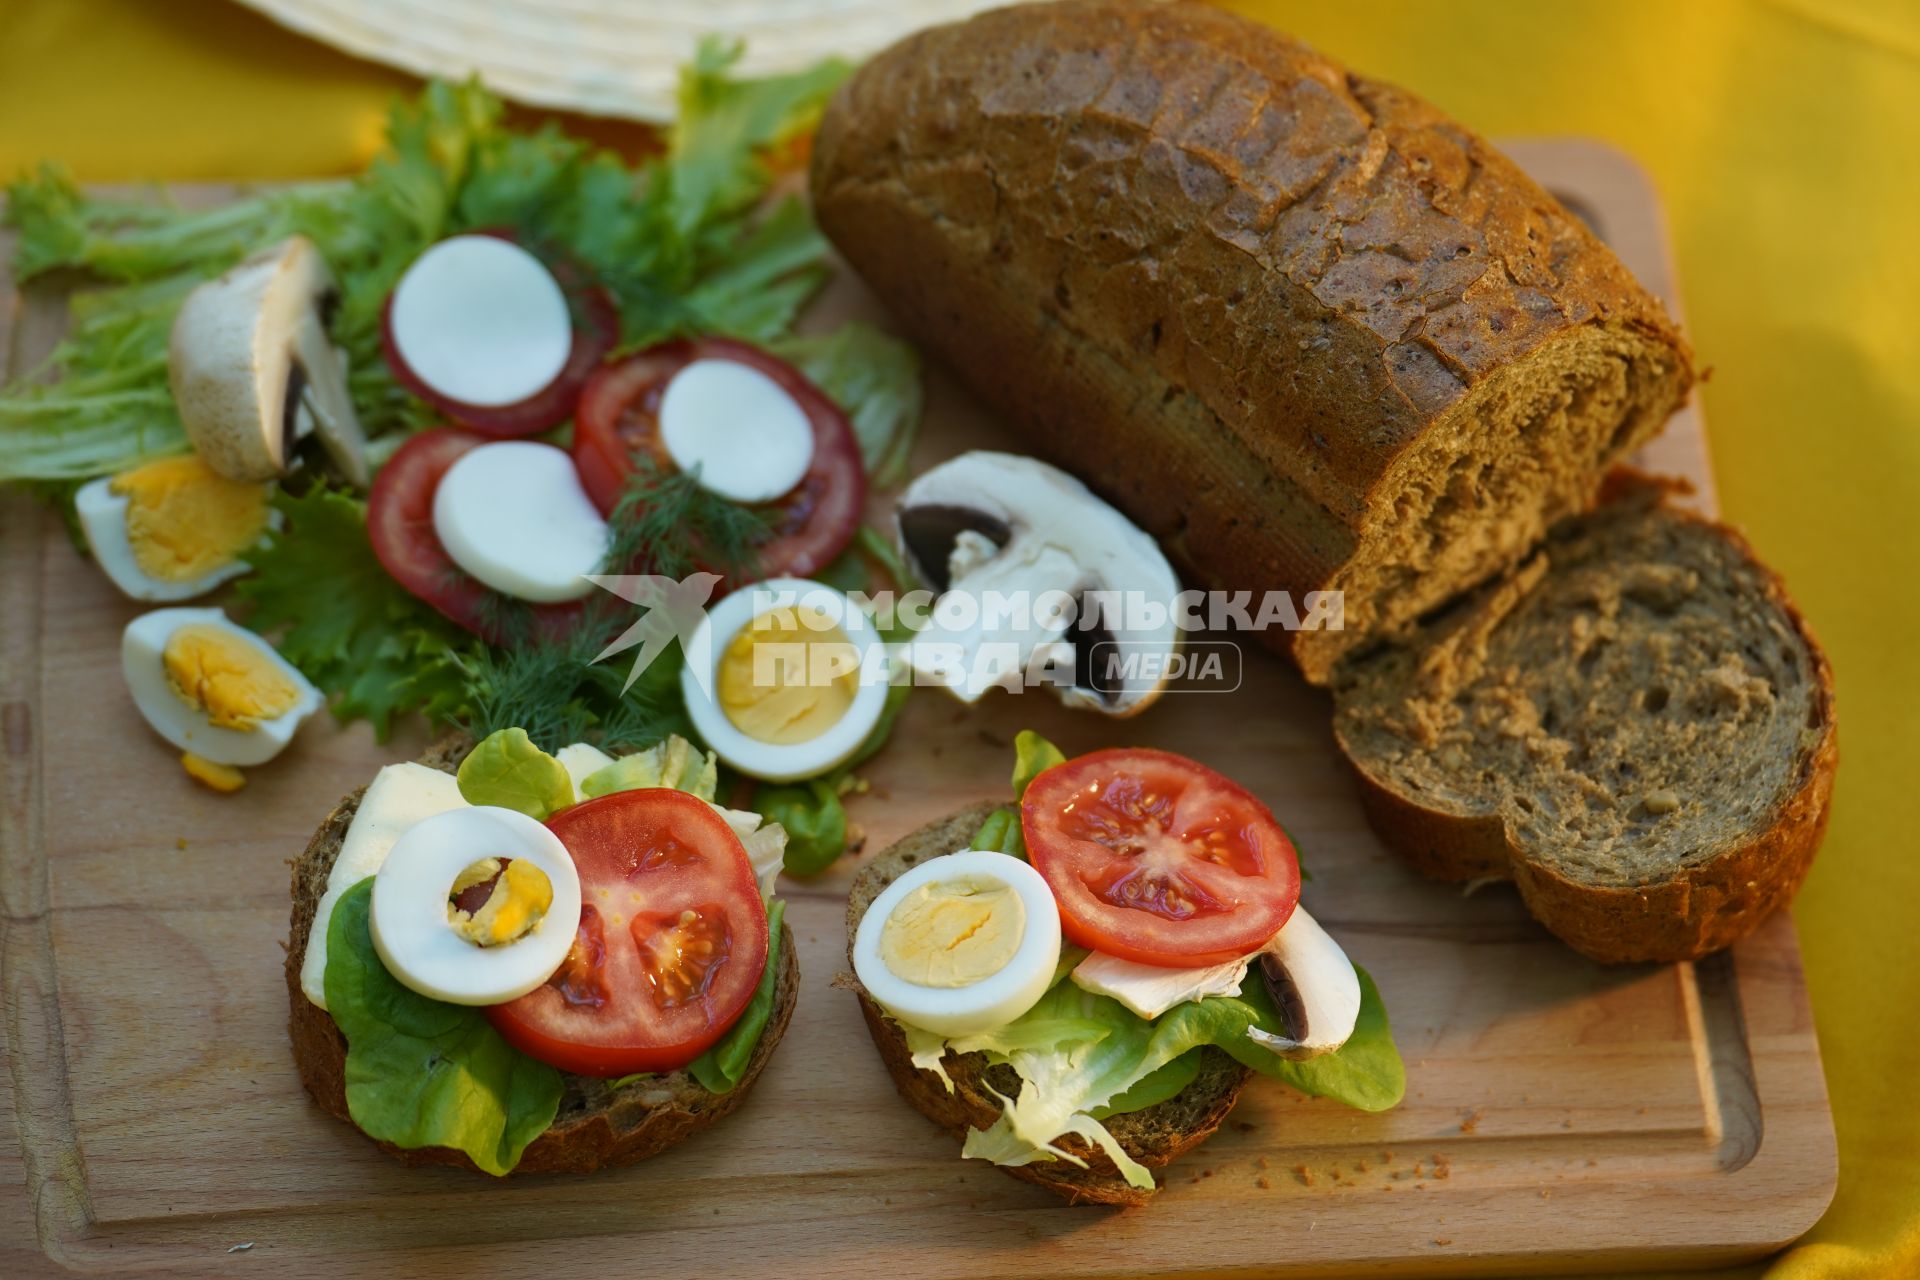 Самара. Батон ржаного хлеба, бутерброды с зеленым салатом, помидорами, моцареллой, яйцом и шампиньонами на деревянной доске.